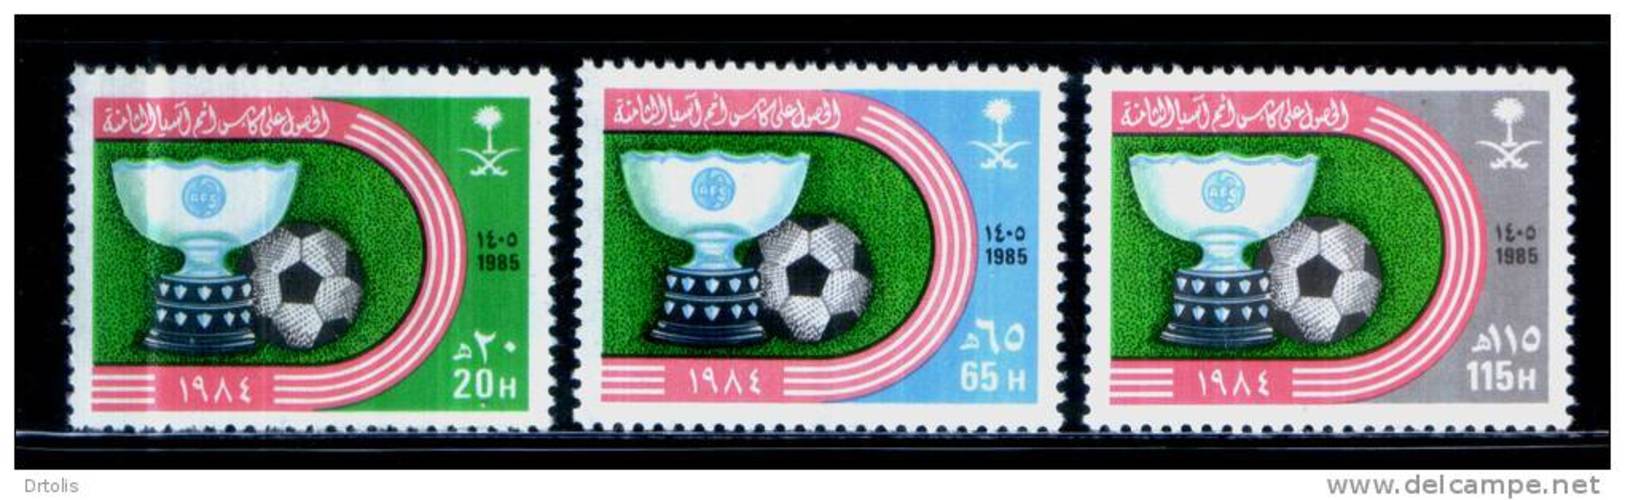 SAUDI ARABIA / SPORT /  FOOTBALL / ASIAN FOOTBALL CUP CHAMPIONSHIP / MNH / VF - Fußball-Asienmeisterschaft (AFC)